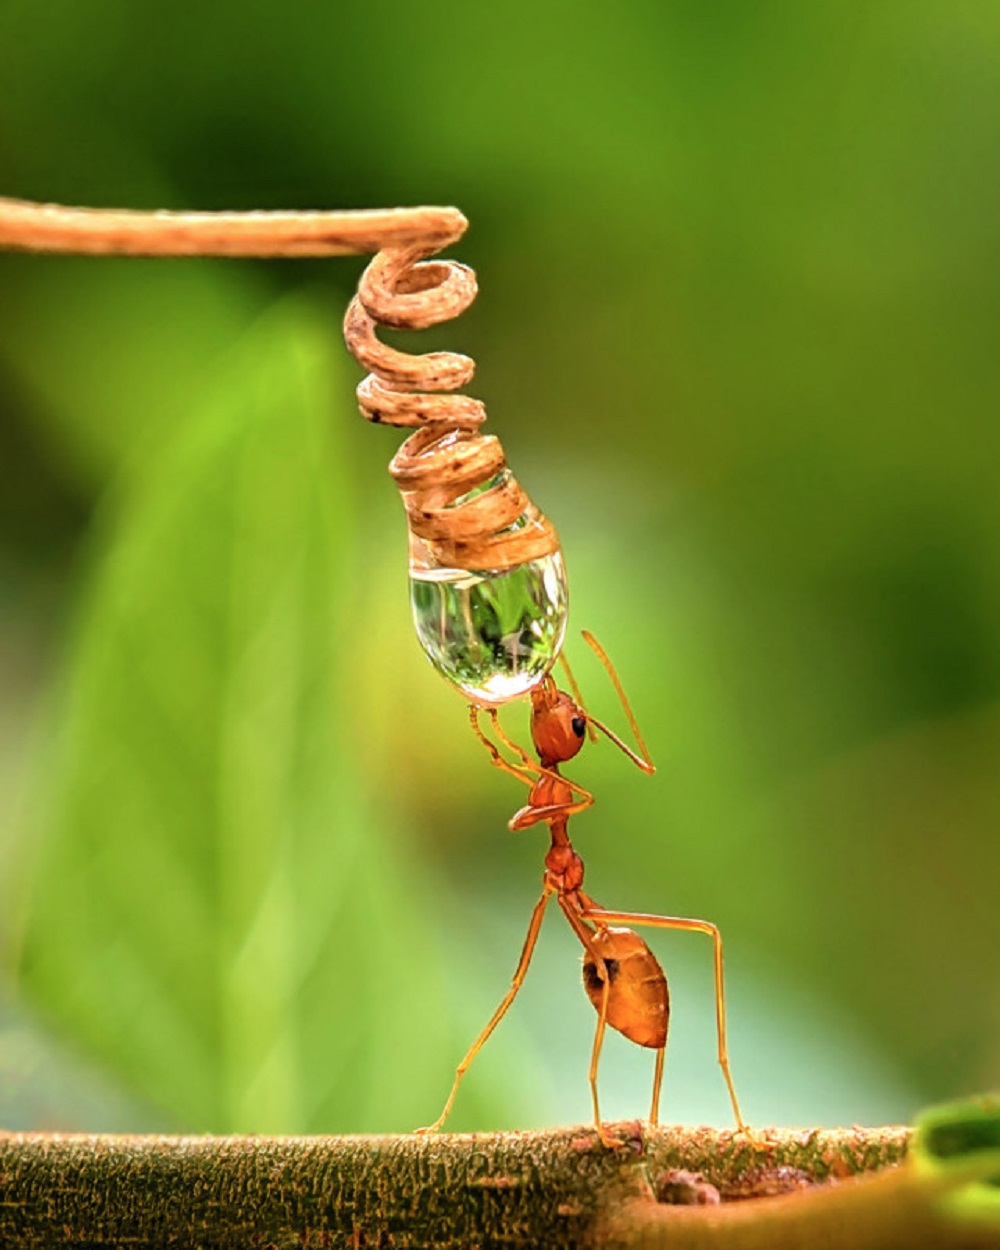 A Importância da Água na Vida das Formigas